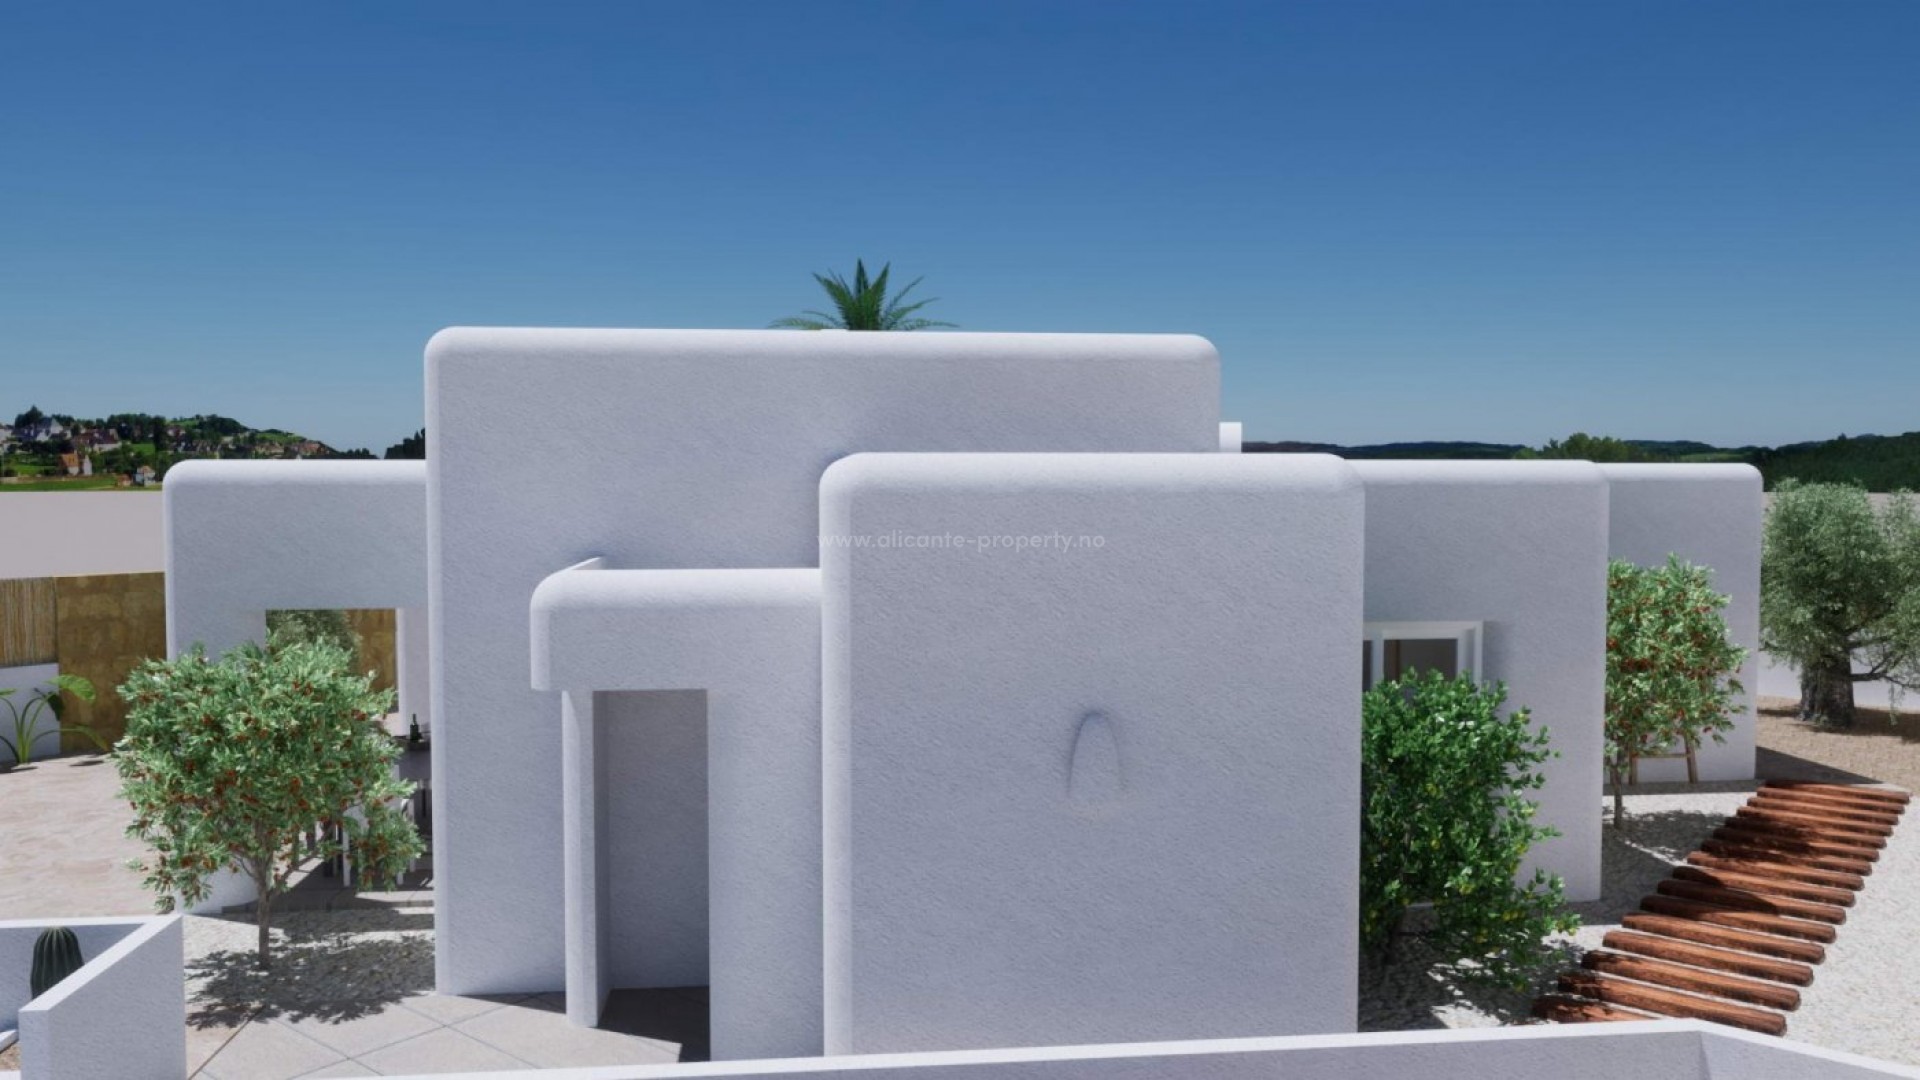 VIlla i Polop Ibiza stil,3 soverom (walk-in garderobeskap, eget bad), 2 bad, basseng, solarium, terrasser og strålende utsikt. Mulighet for kjeller